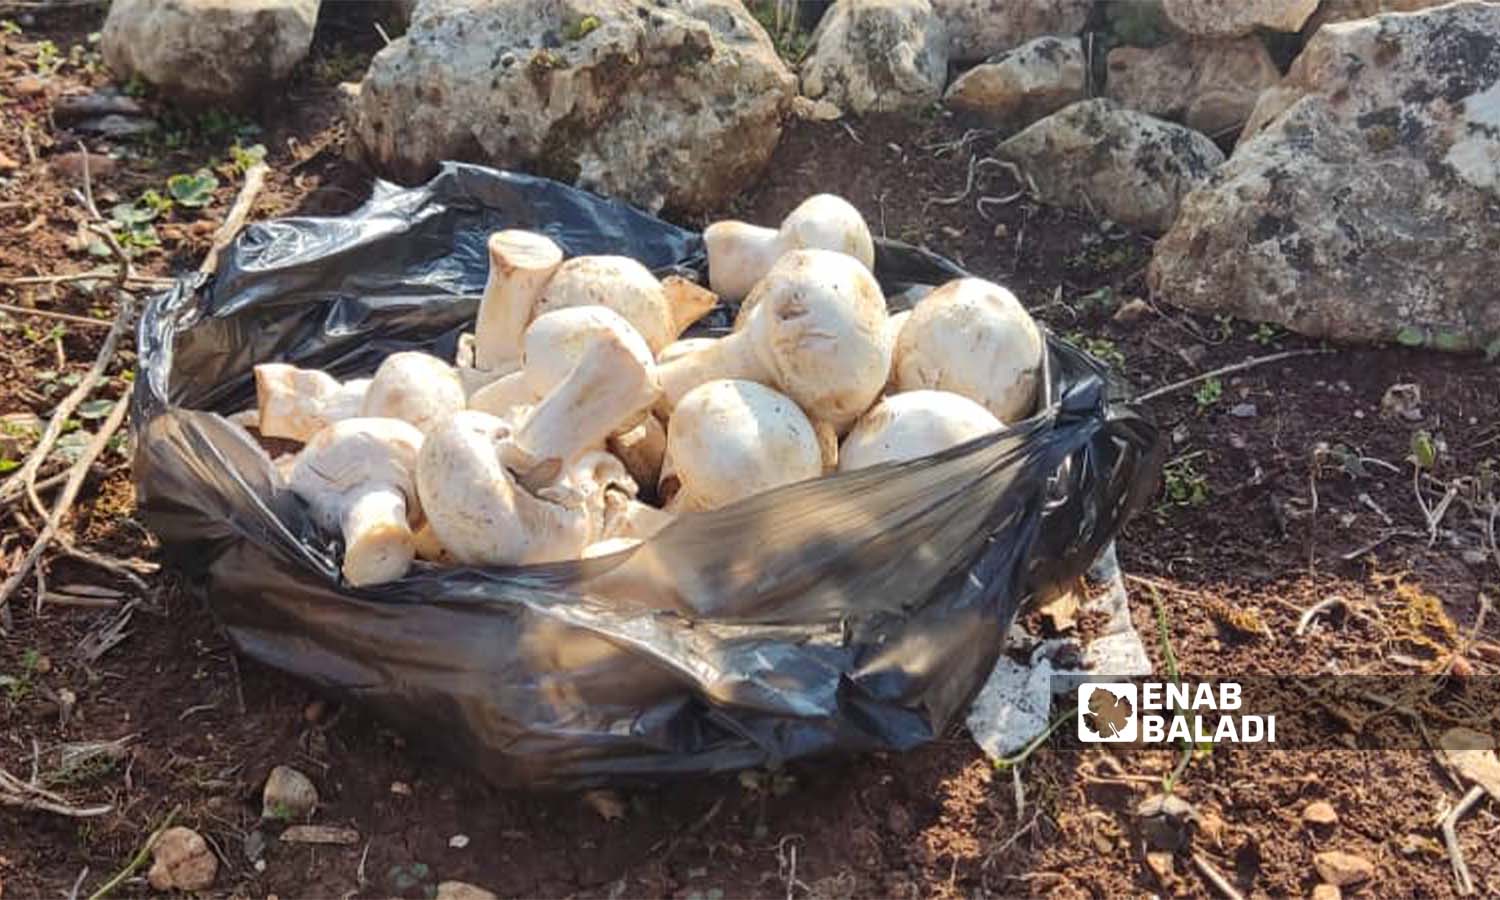 Collecting mushrooms in Idlib region (Enab Baladi / Hadia Mansour)